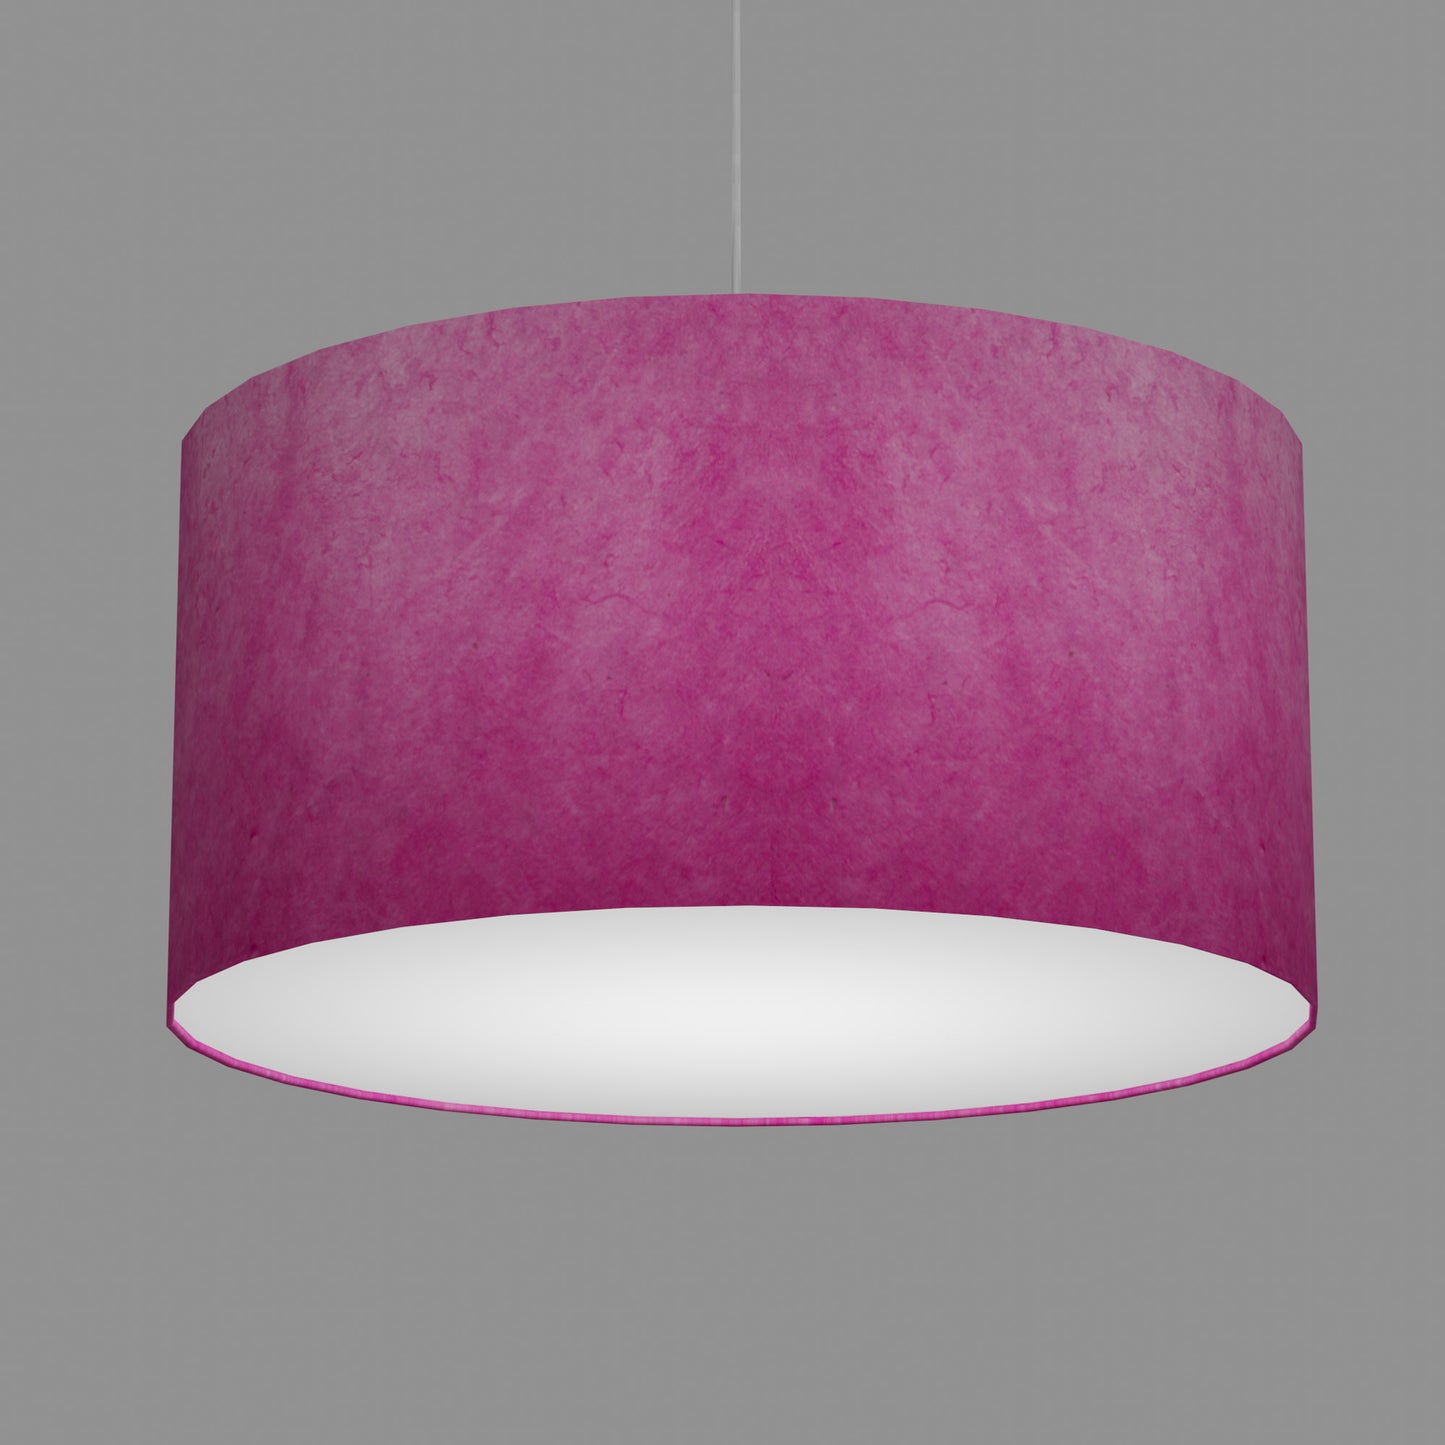 Drum Lamp Shade - P57 - Hot Pink Lokta, 60cm(d) x 30cm(h)